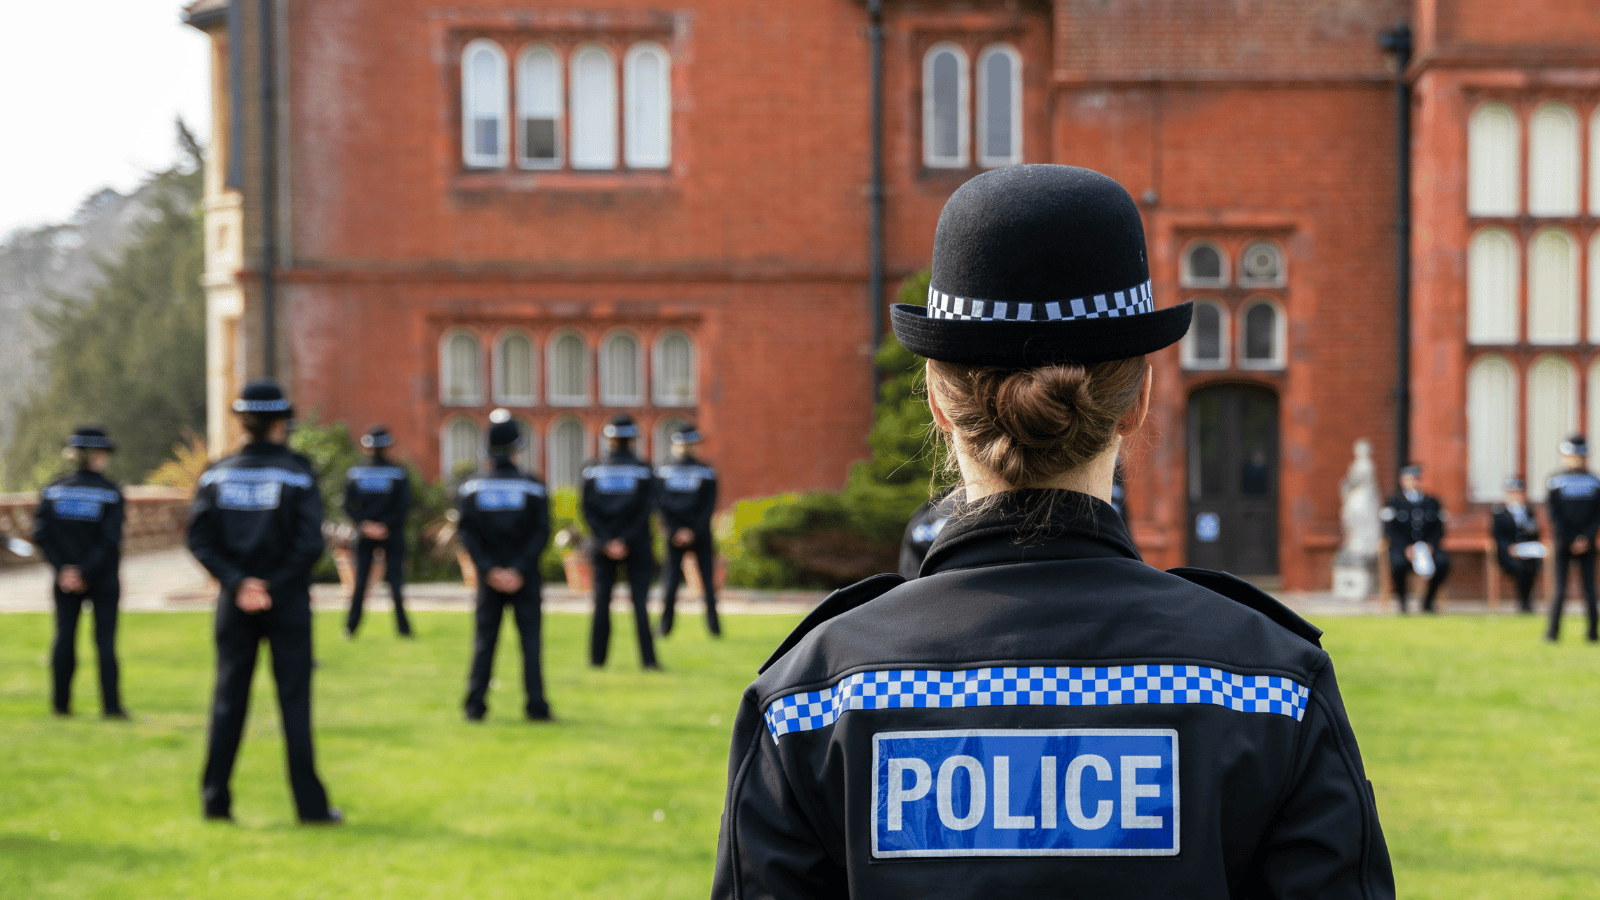 γυναίκα αστυνομικός με καπέλο στο προσκήνιο μιας φωτογραφίας νέων αστυνομικών που στέκονται στο προσκήνιο στο αρχηγείο της αστυνομίας του Surrey